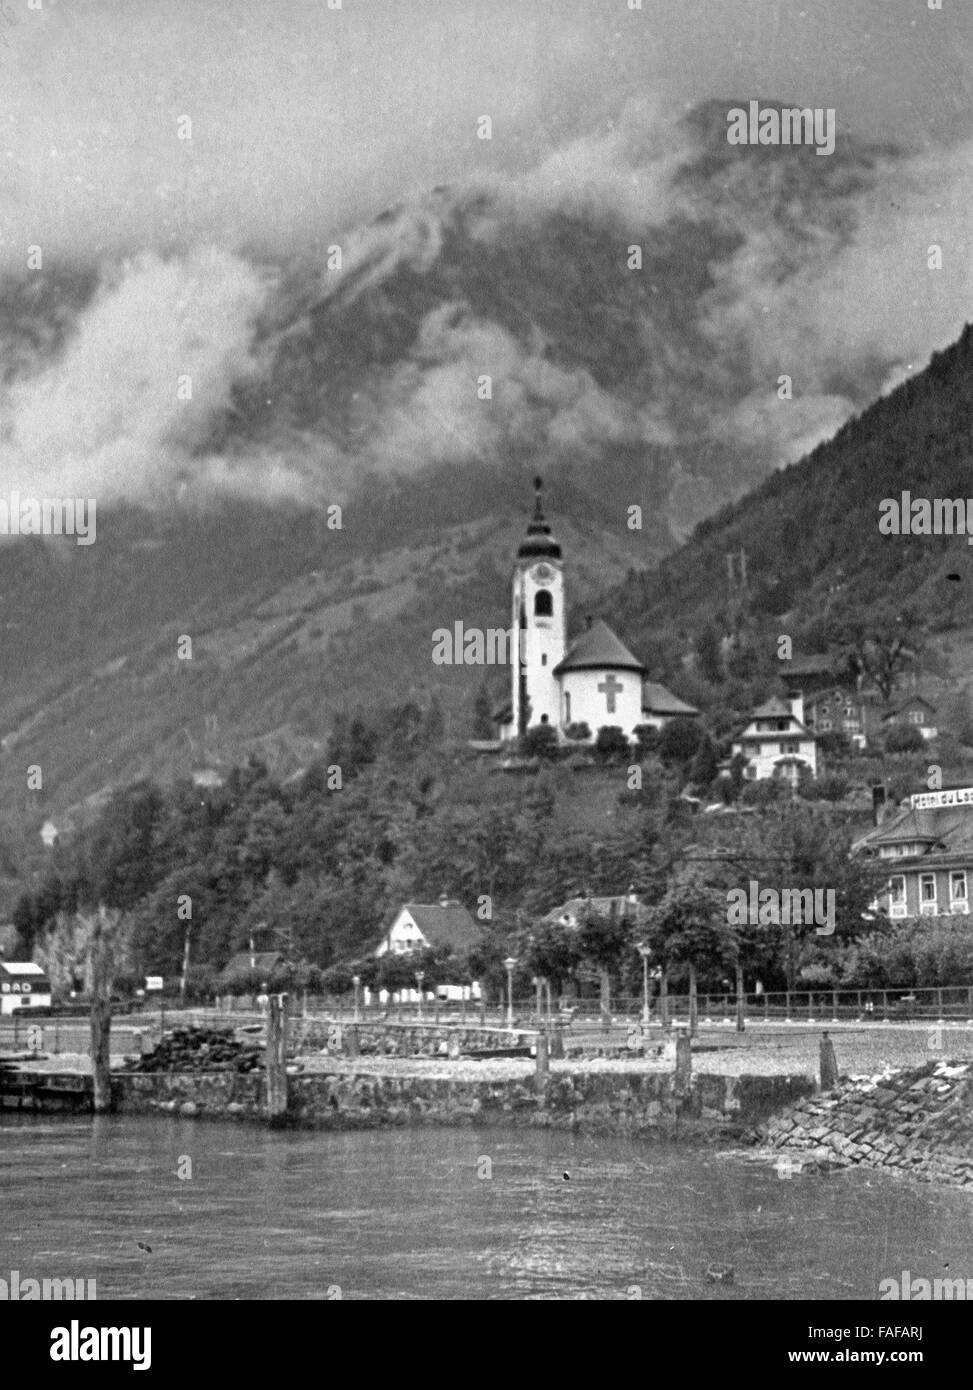 Die Herz Jesu Pfarrkirche in Flüelen im Kanton Uri, Schweiz 1930er Jahre. Herz Jesu church at Fluelen in Uri canton, Switzerland 1930s. Stock Photo